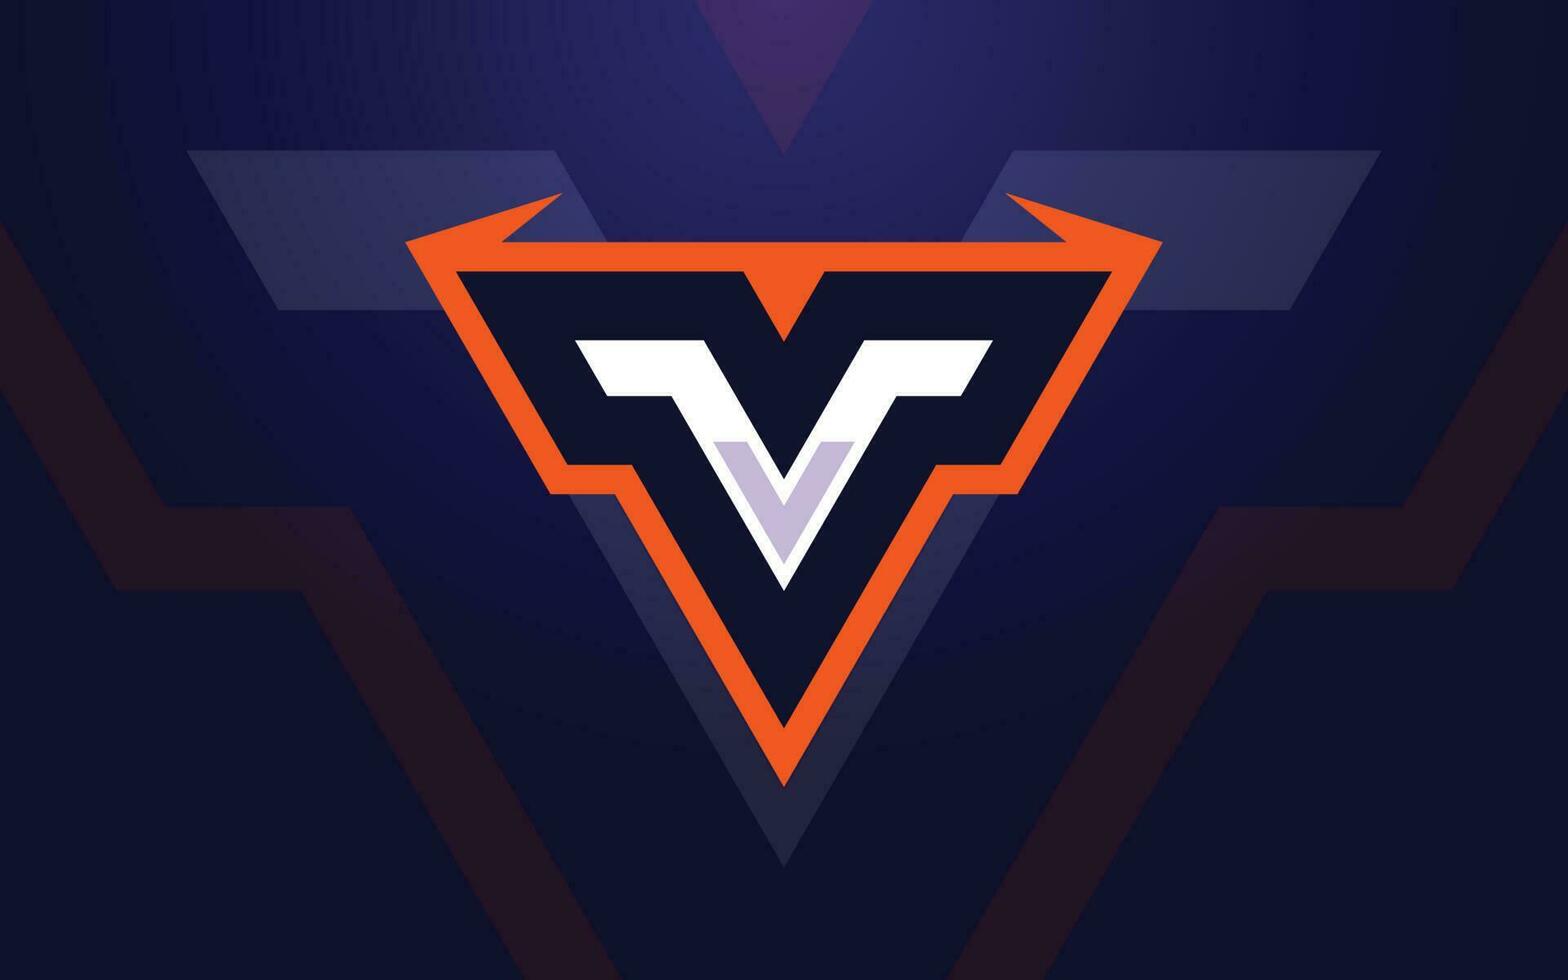 v initiale e-sports mot monogramme logo pour jeu et tournoi logo vecteur